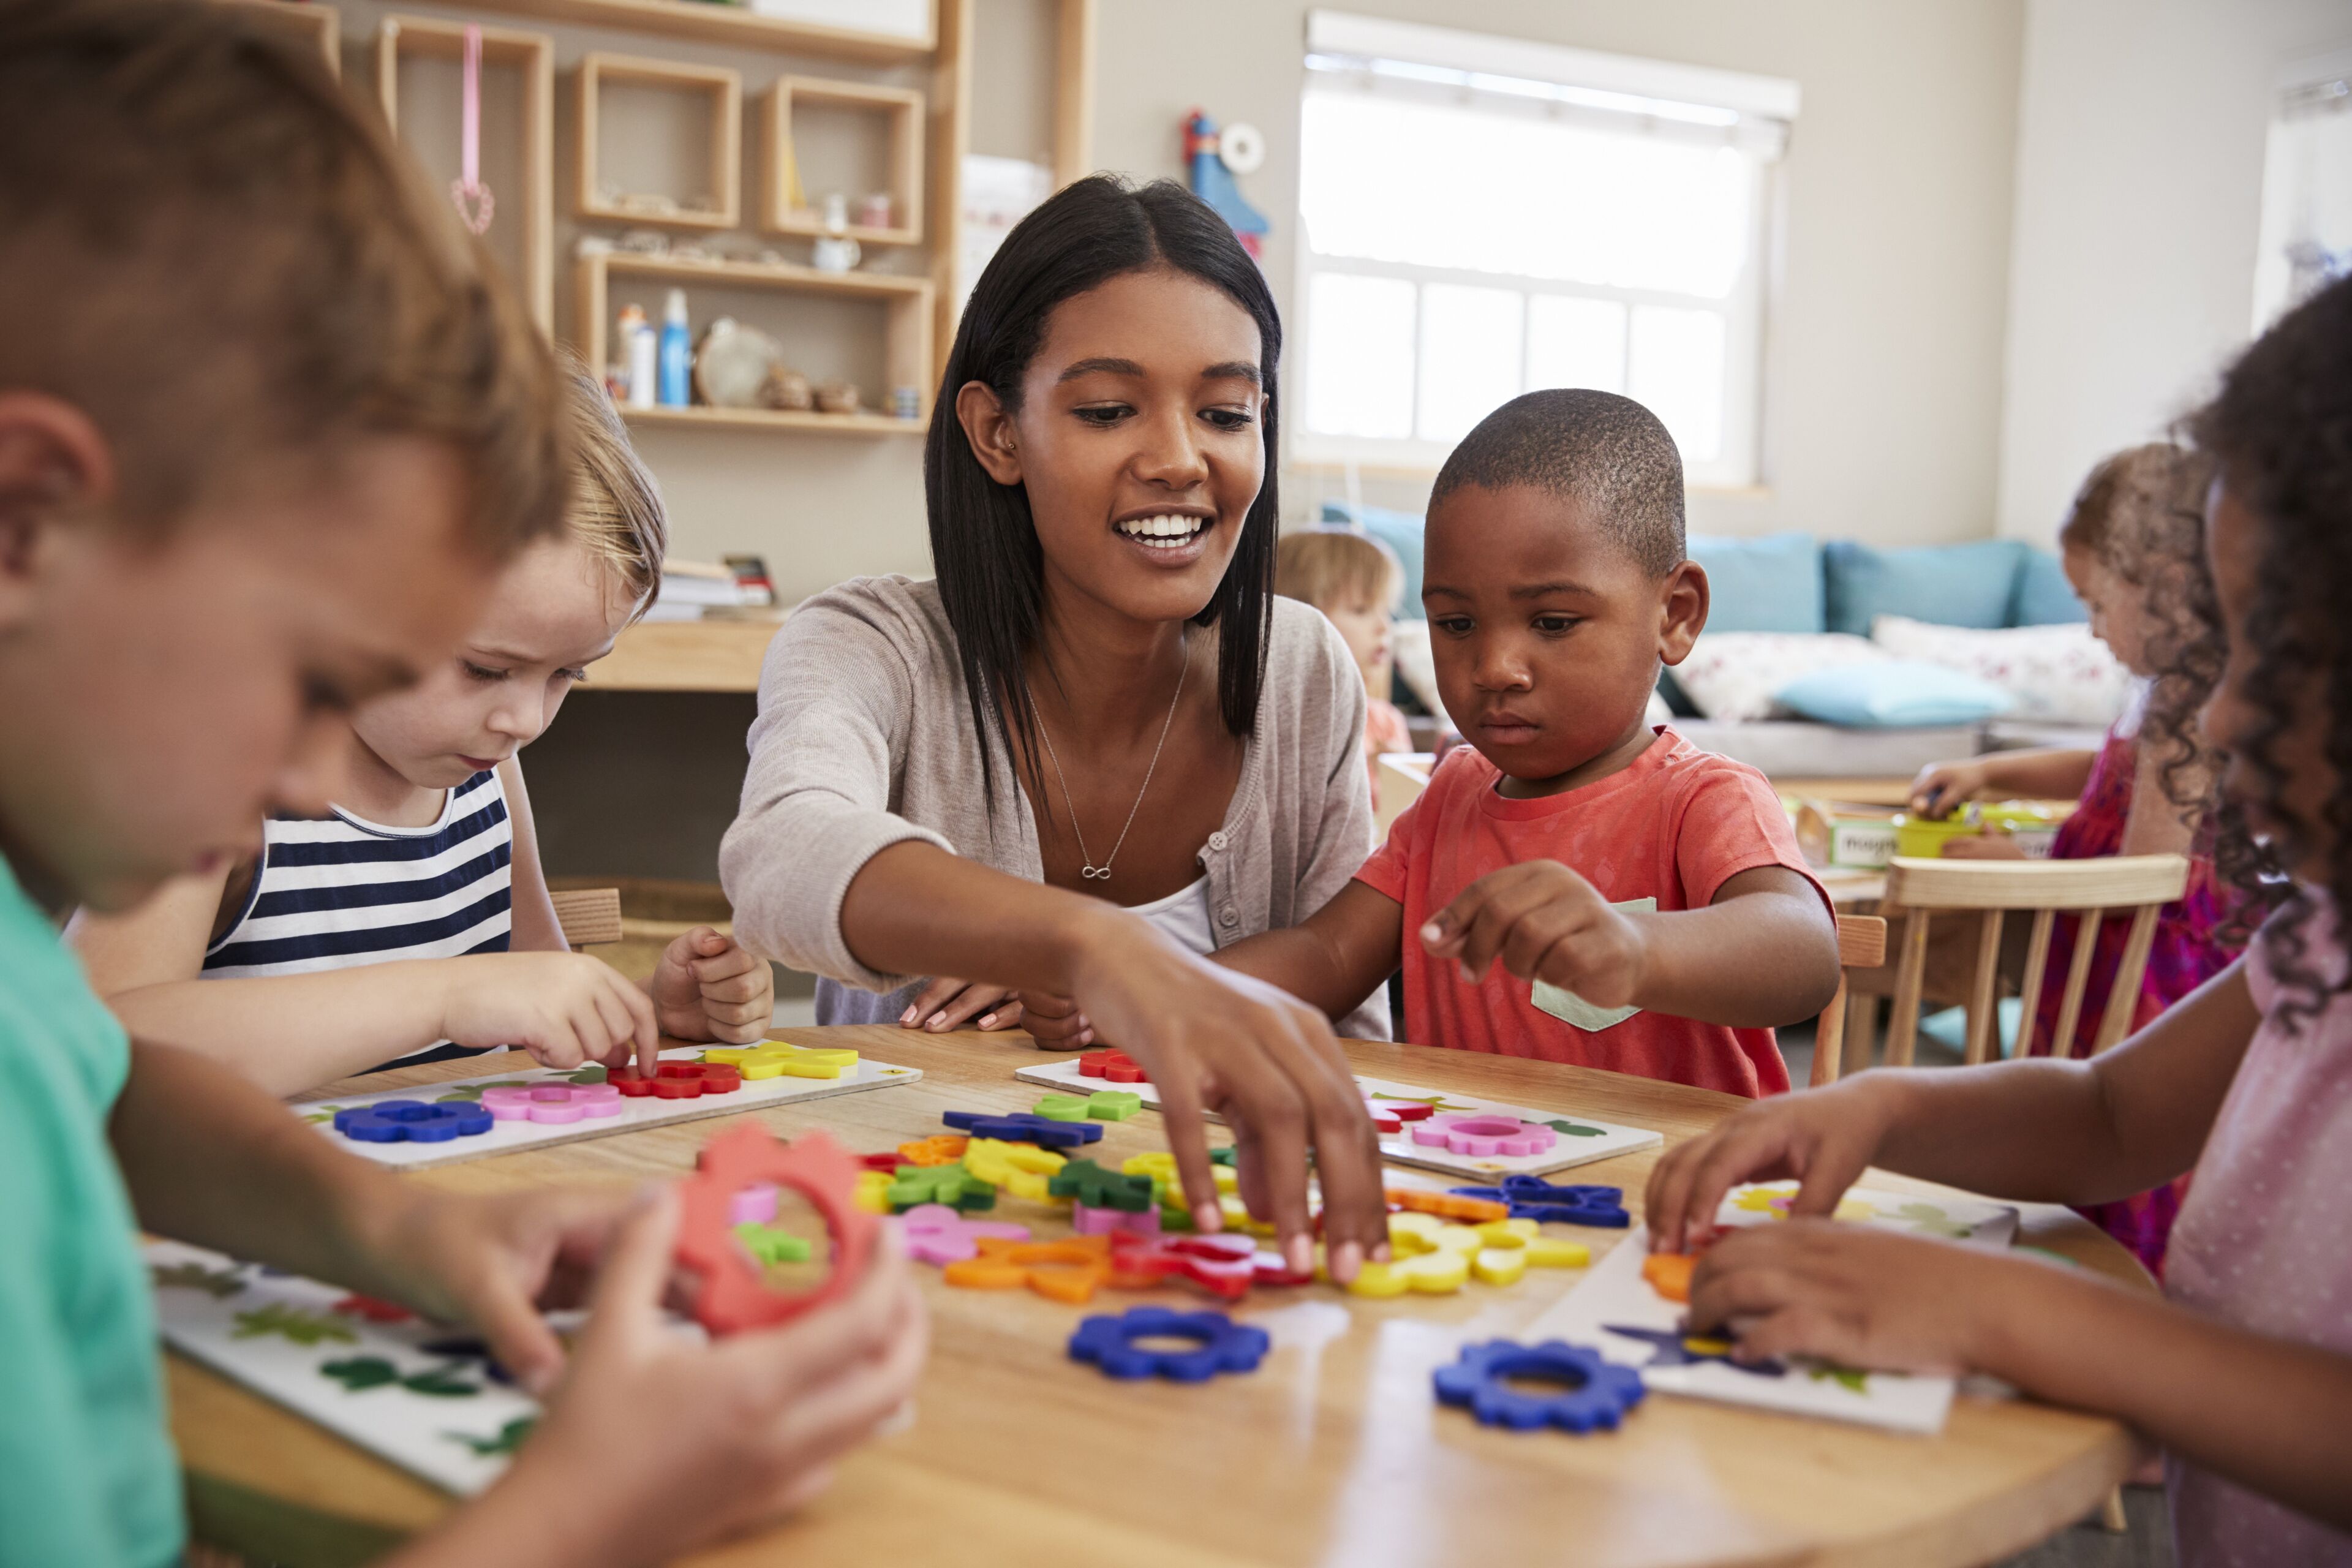 Une enseignante interagit avec de jeunes enfants autour d'une table, les guidant dans une leçon ludique sur les formes et les couleurs à l'aide de jouets éducatifs.